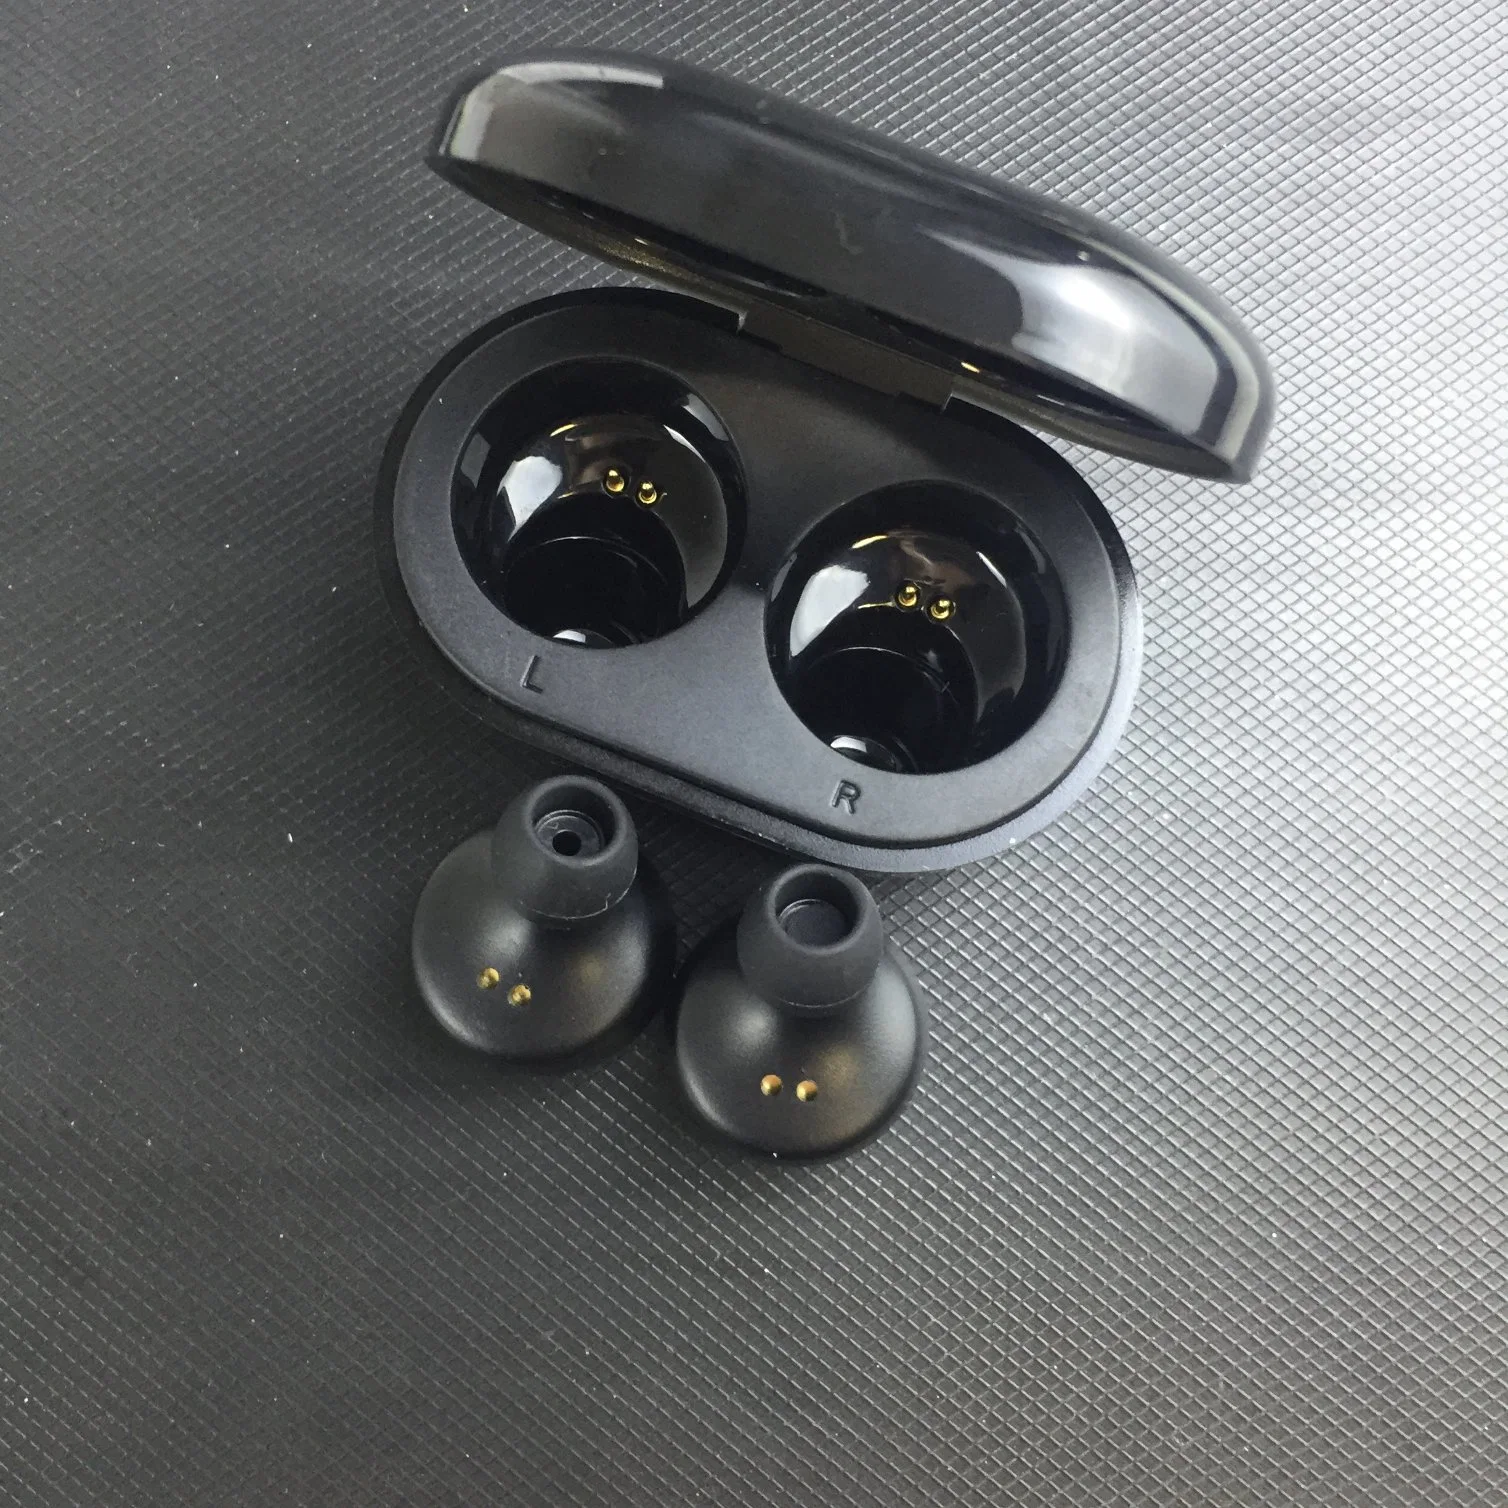 1 original: 1 mejor calidad de los auriculares inalámbricos auriculares con ventanas emergentes para Airpode Auriculares Max Air PRO vainas